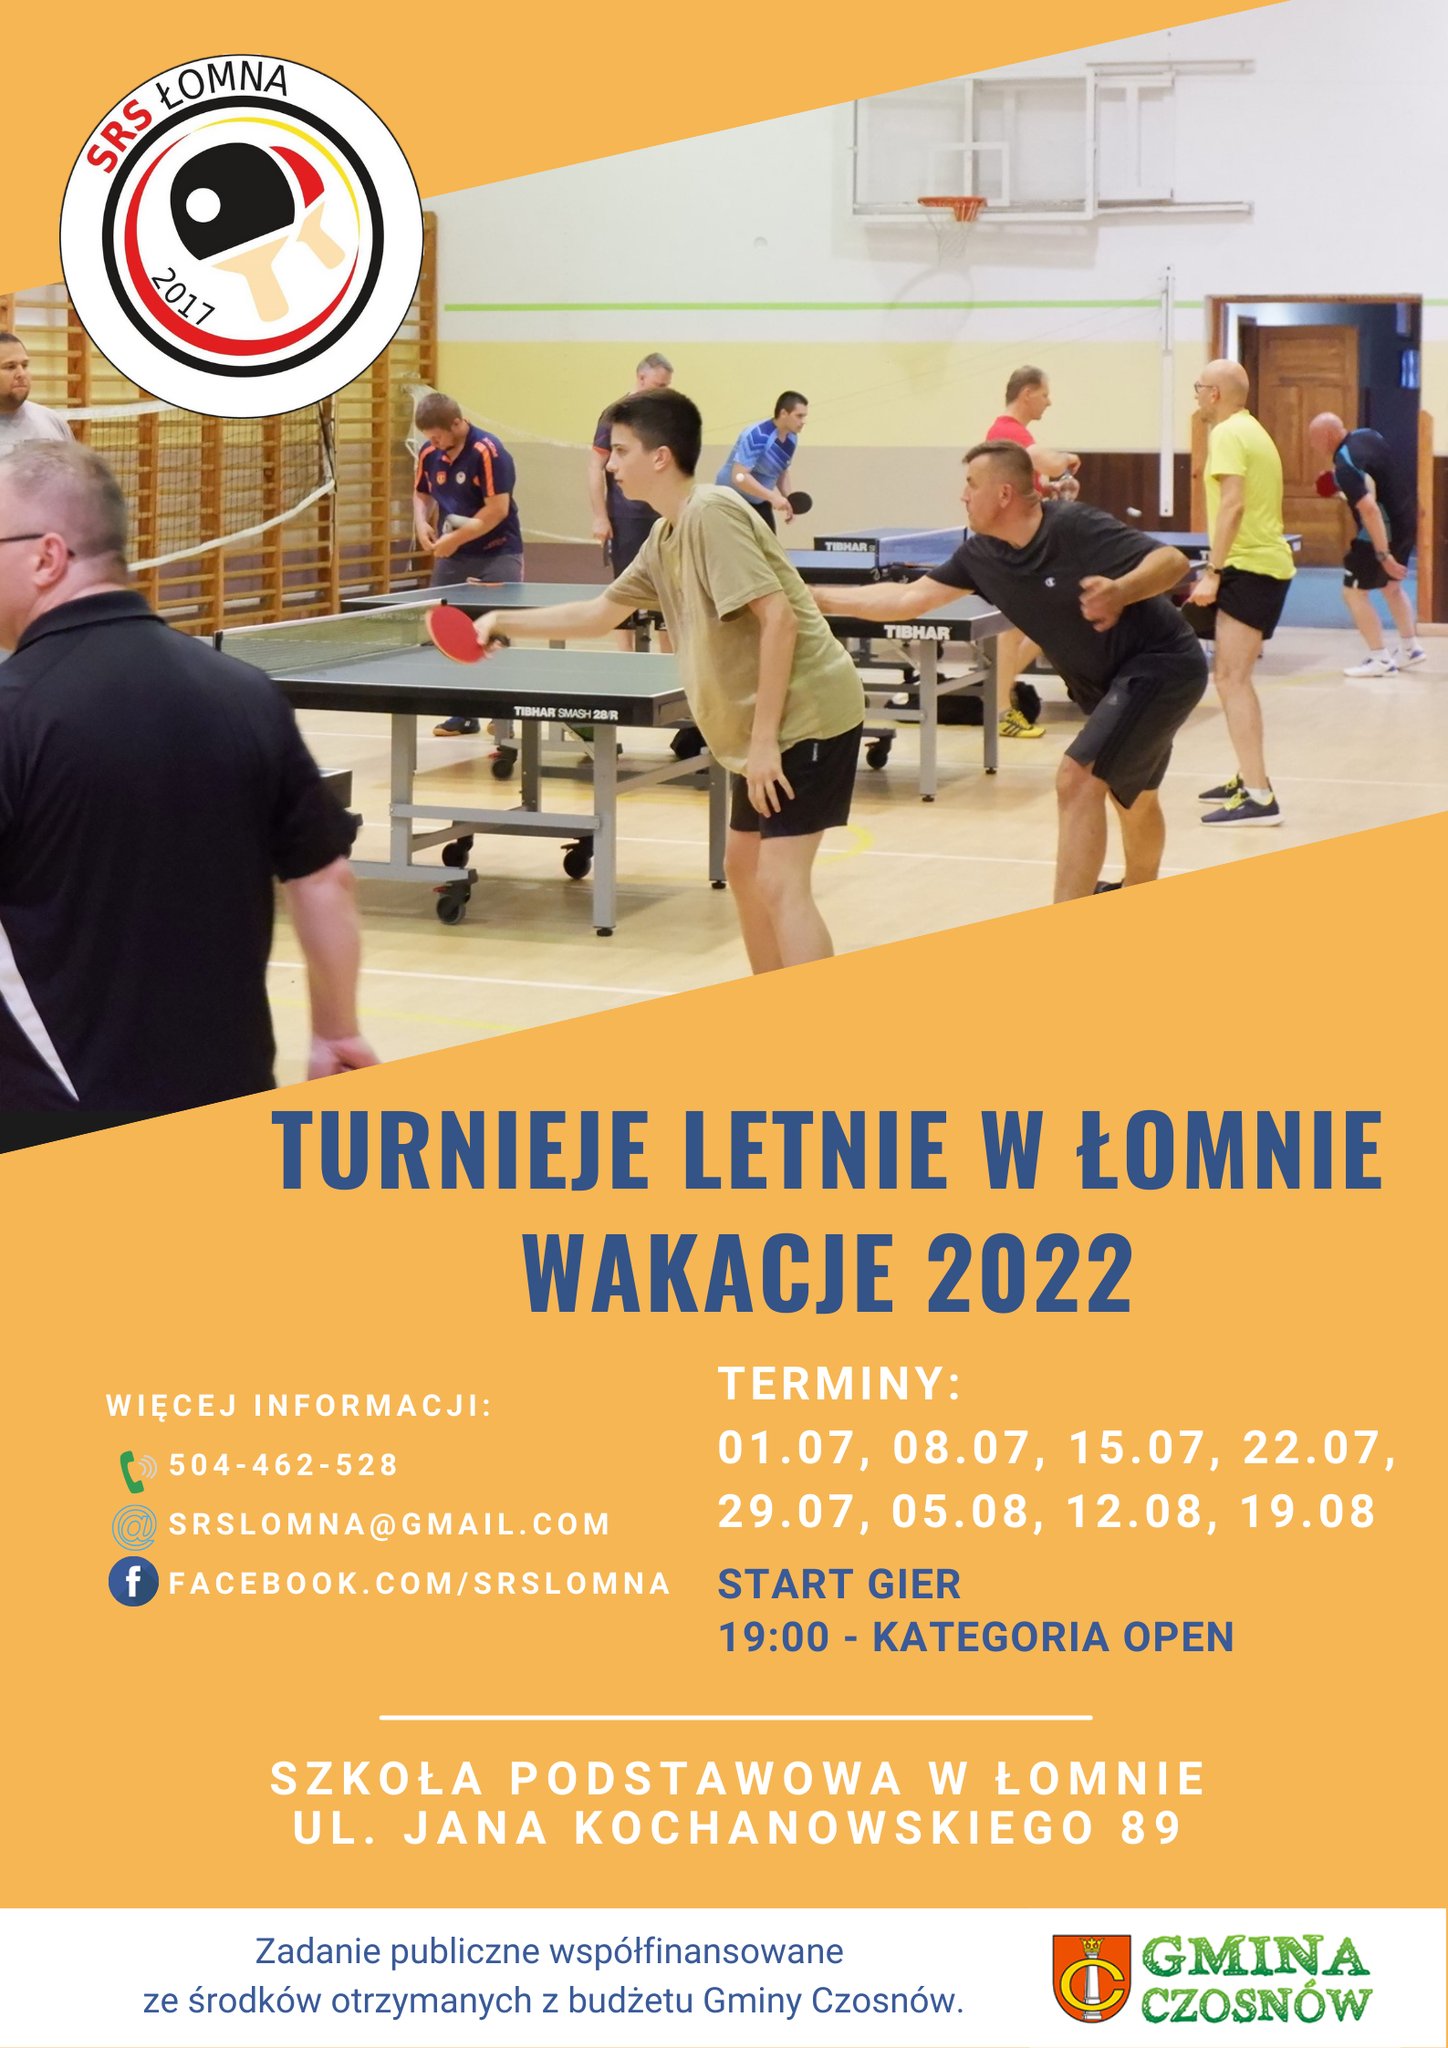 Plakat turnieju Turnieje letnie w Łomnie wakacje 2022 - termin 4